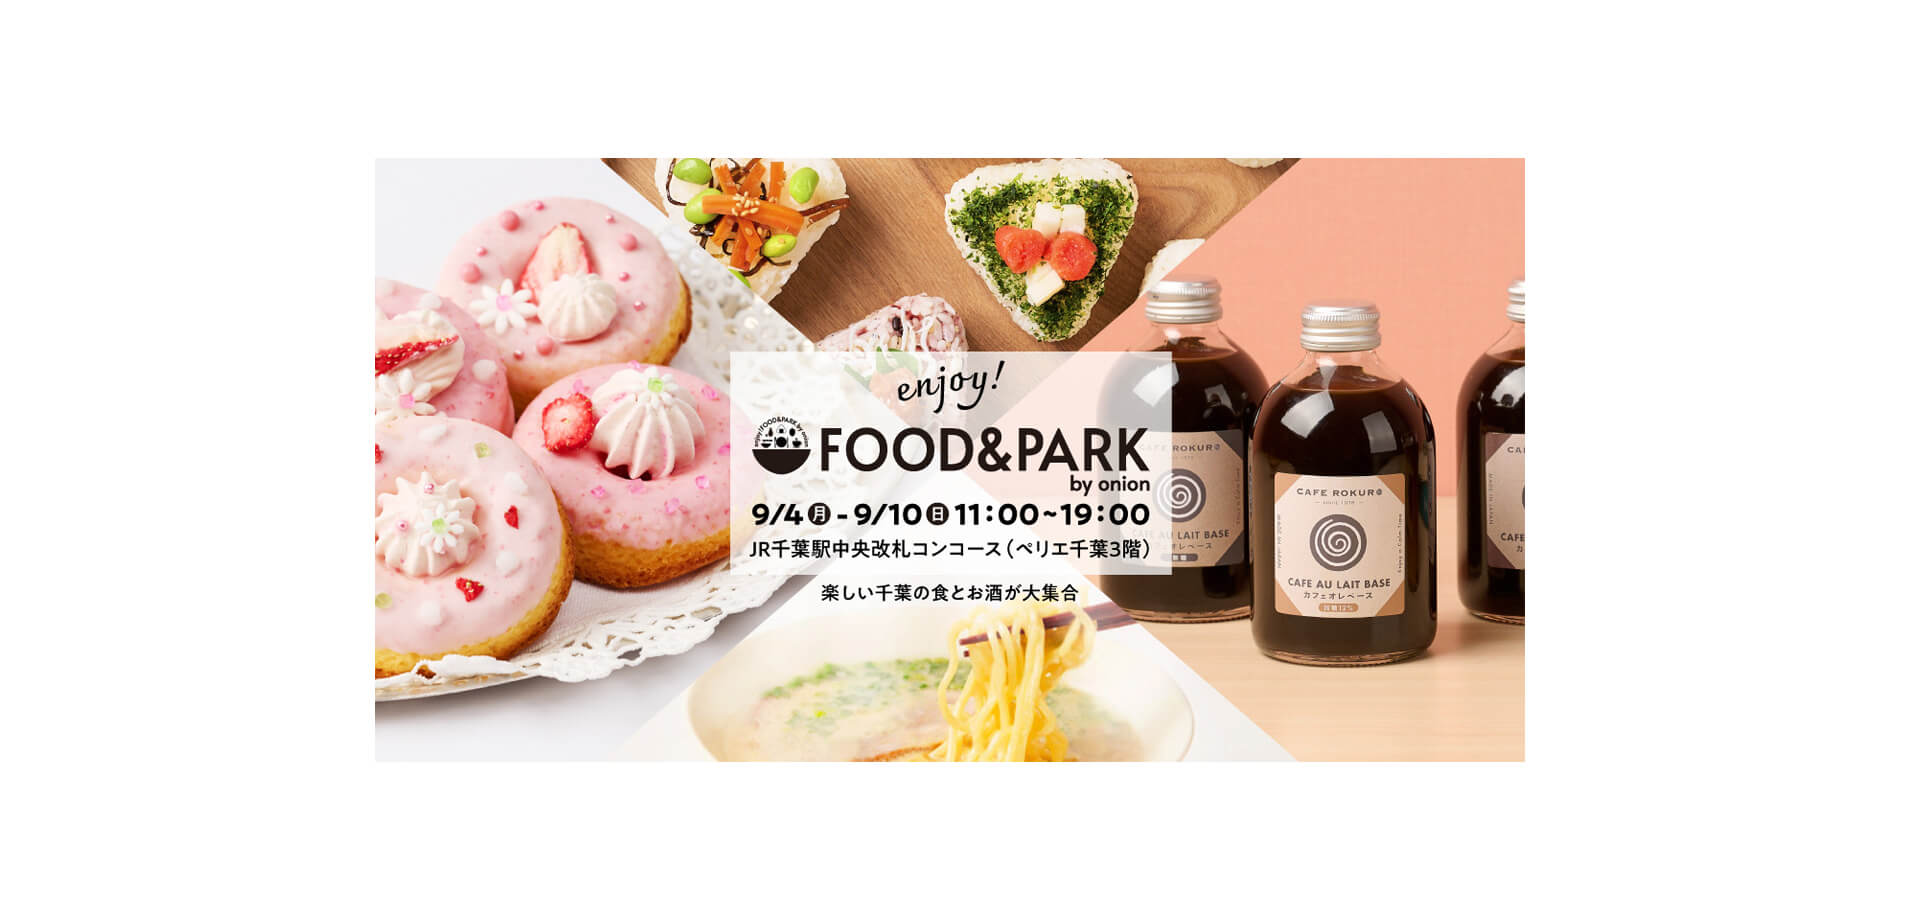 FOOD&PARK by onion 食品類のディスプレイ